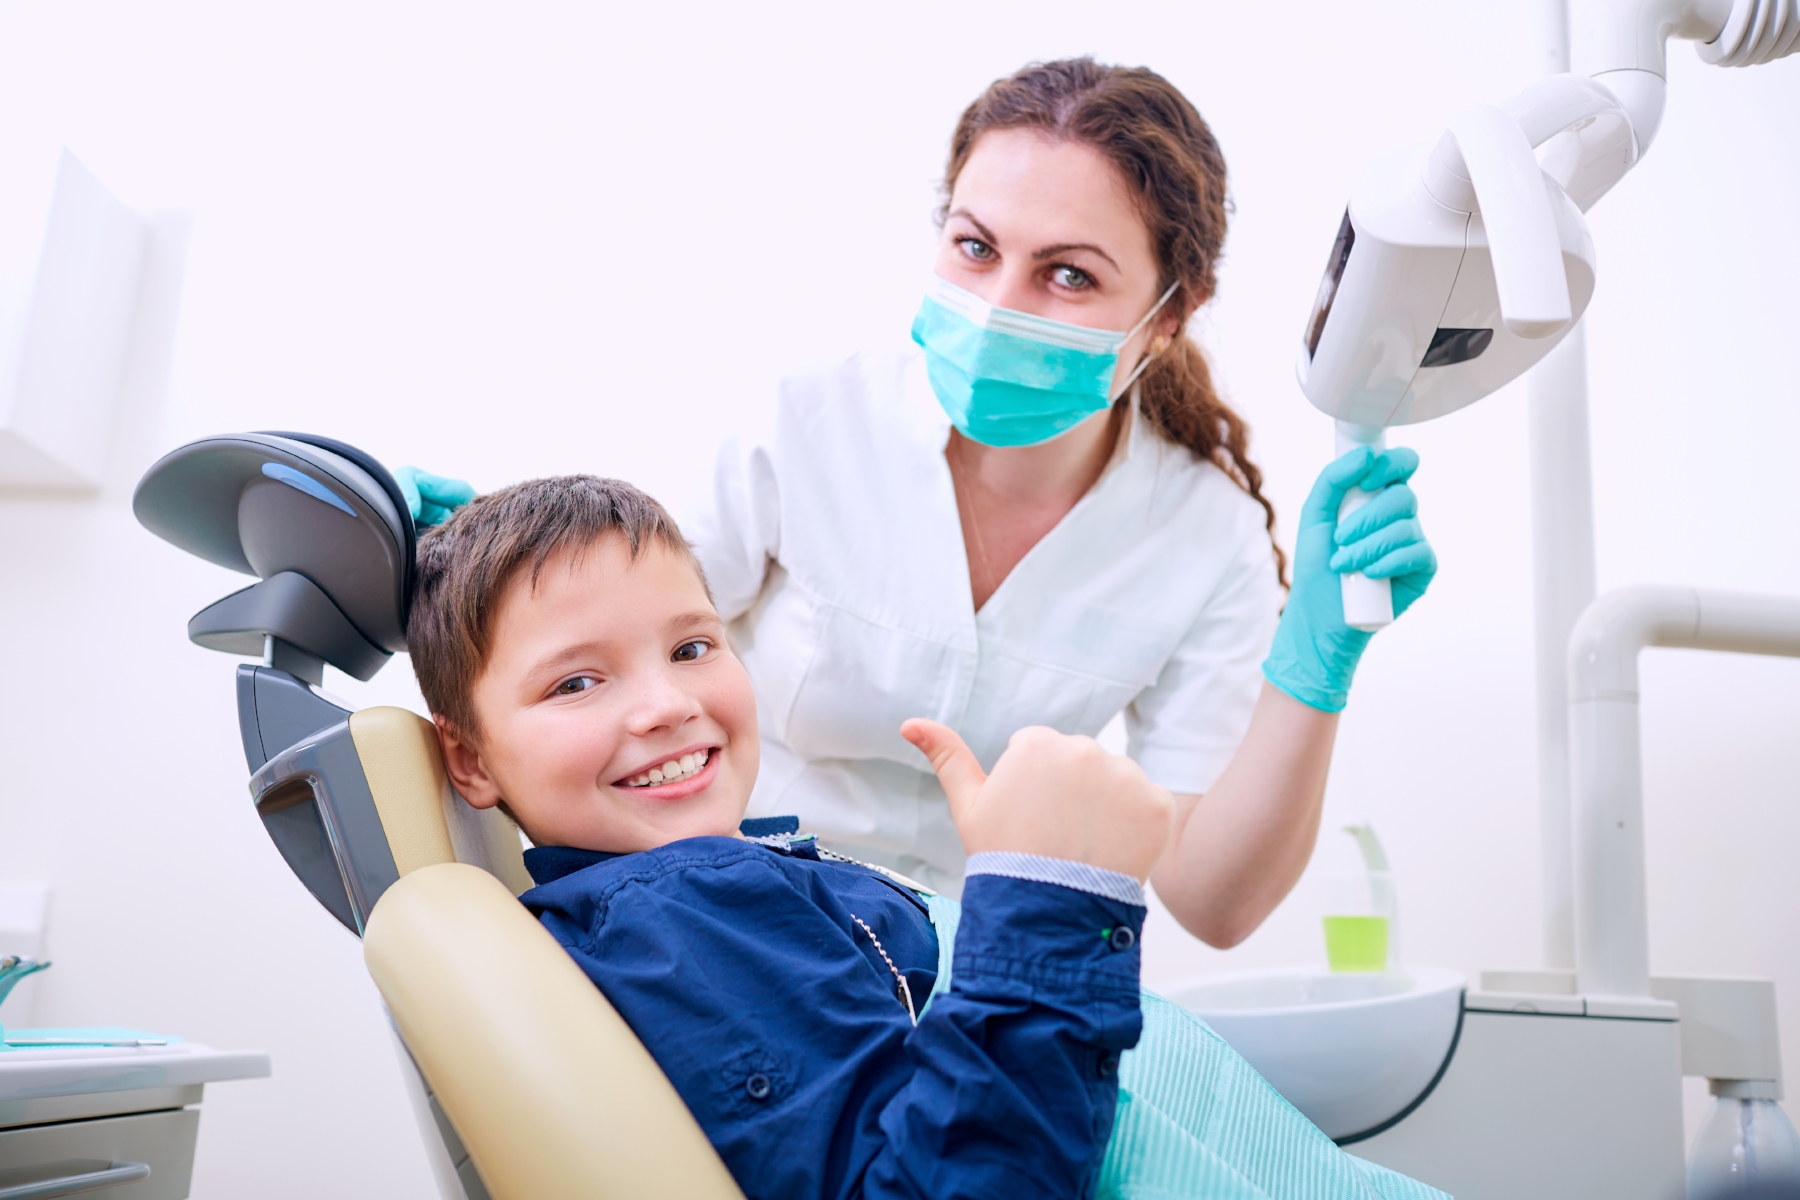 What Makes Dental Treatments Easier for Children?